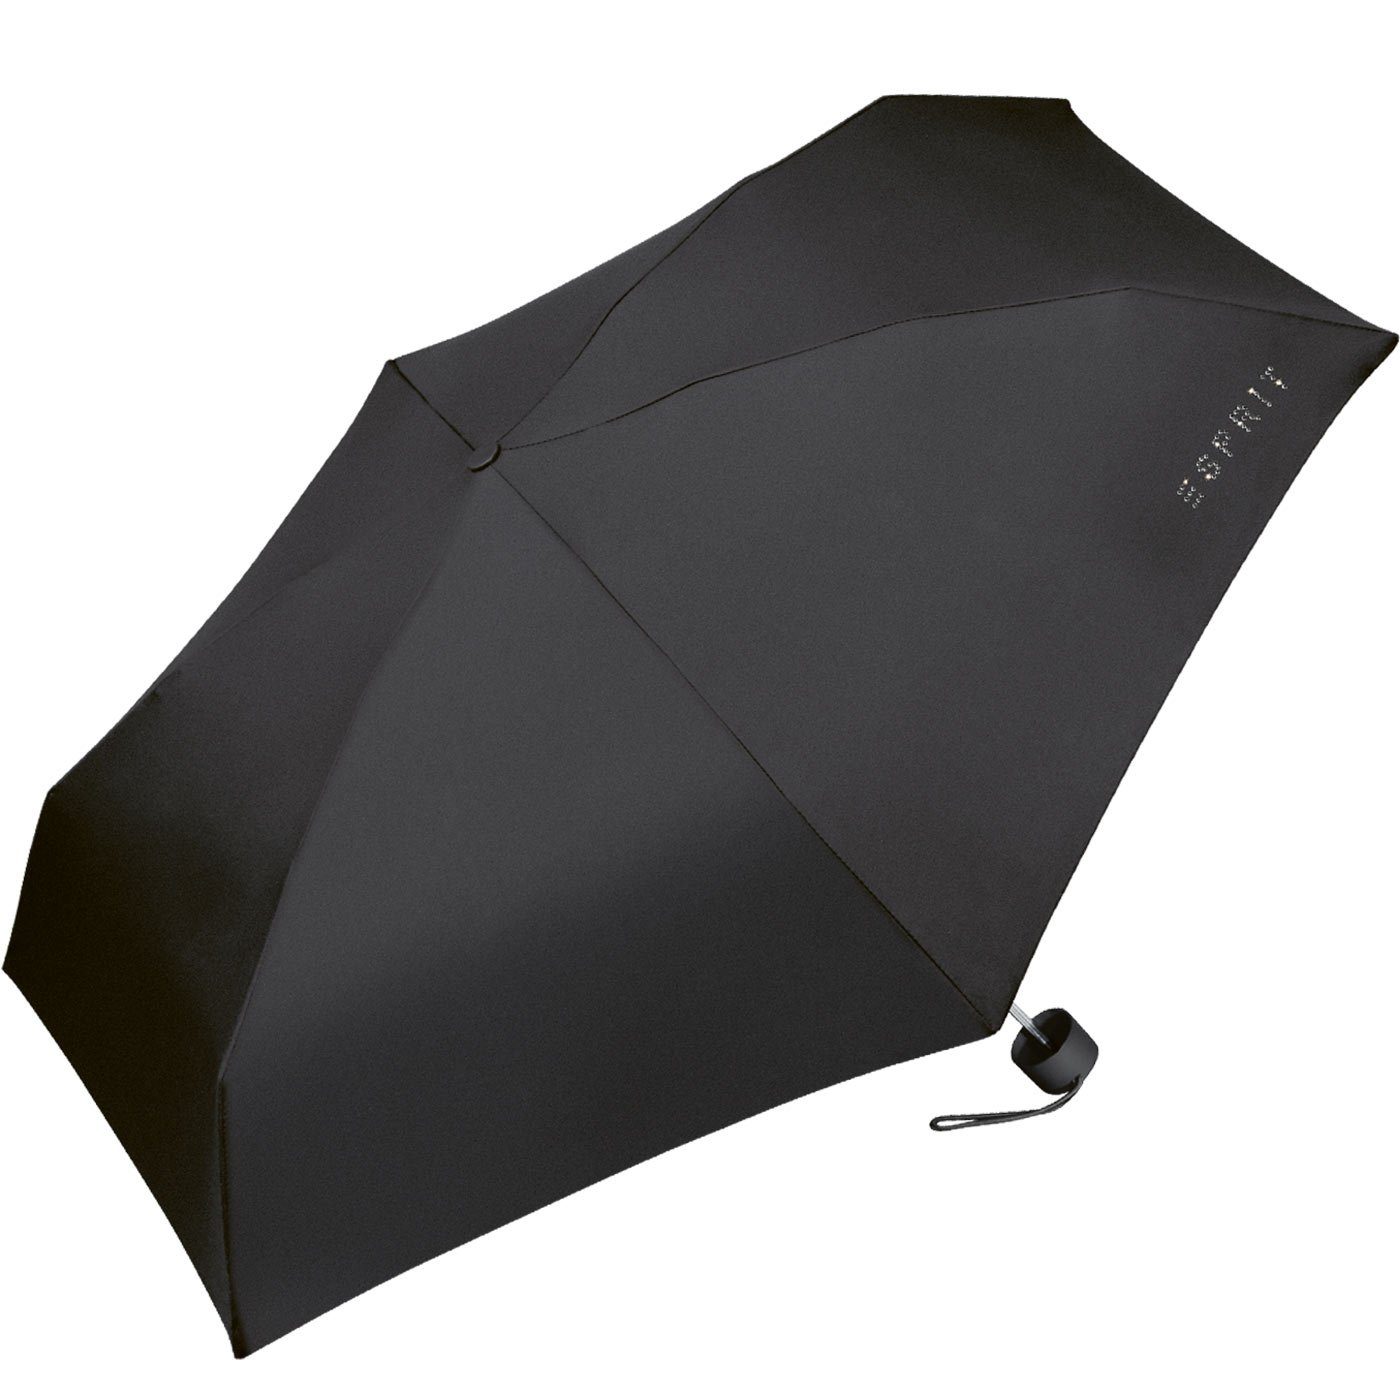 Esprit Langregenschirm Super Mini klein Petito winzig Schirm leicht, und sehr